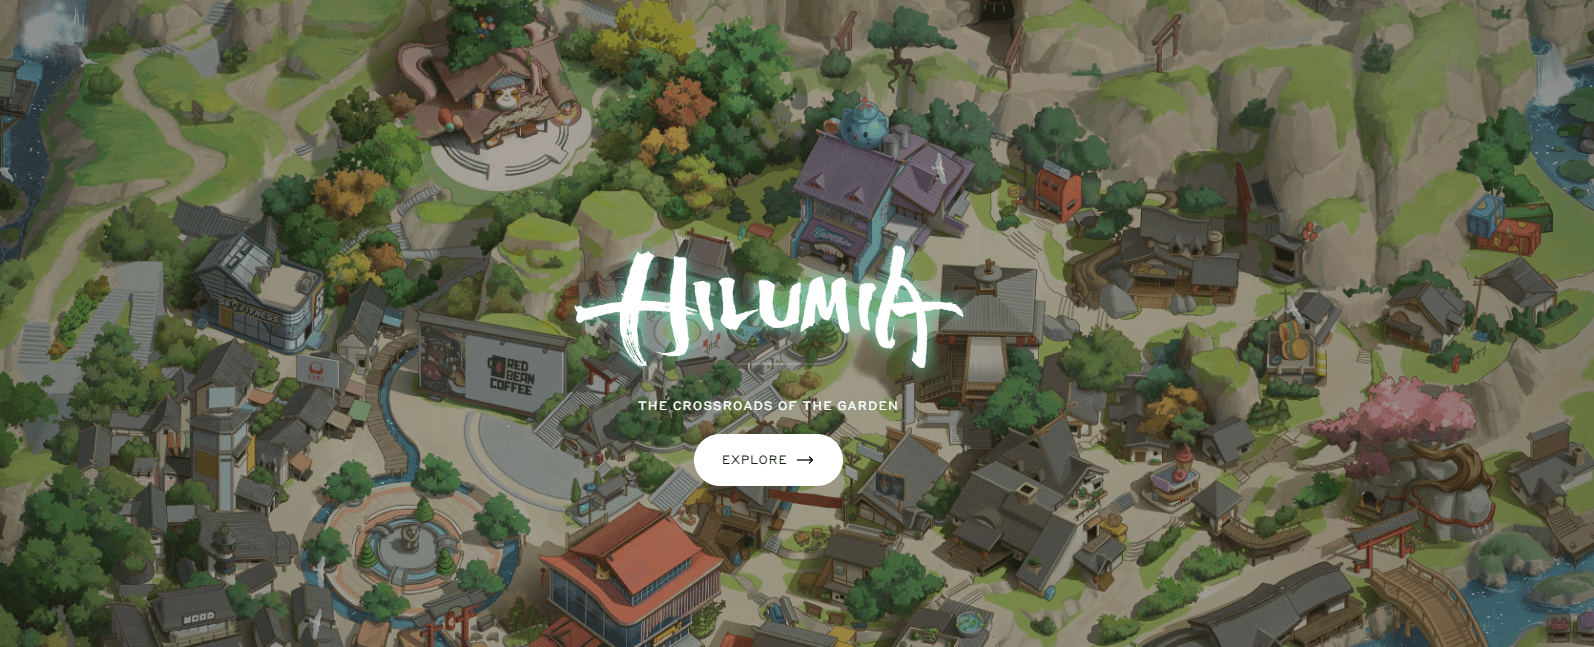 Azuki Hilumia 1 Year Anniversary Announcement